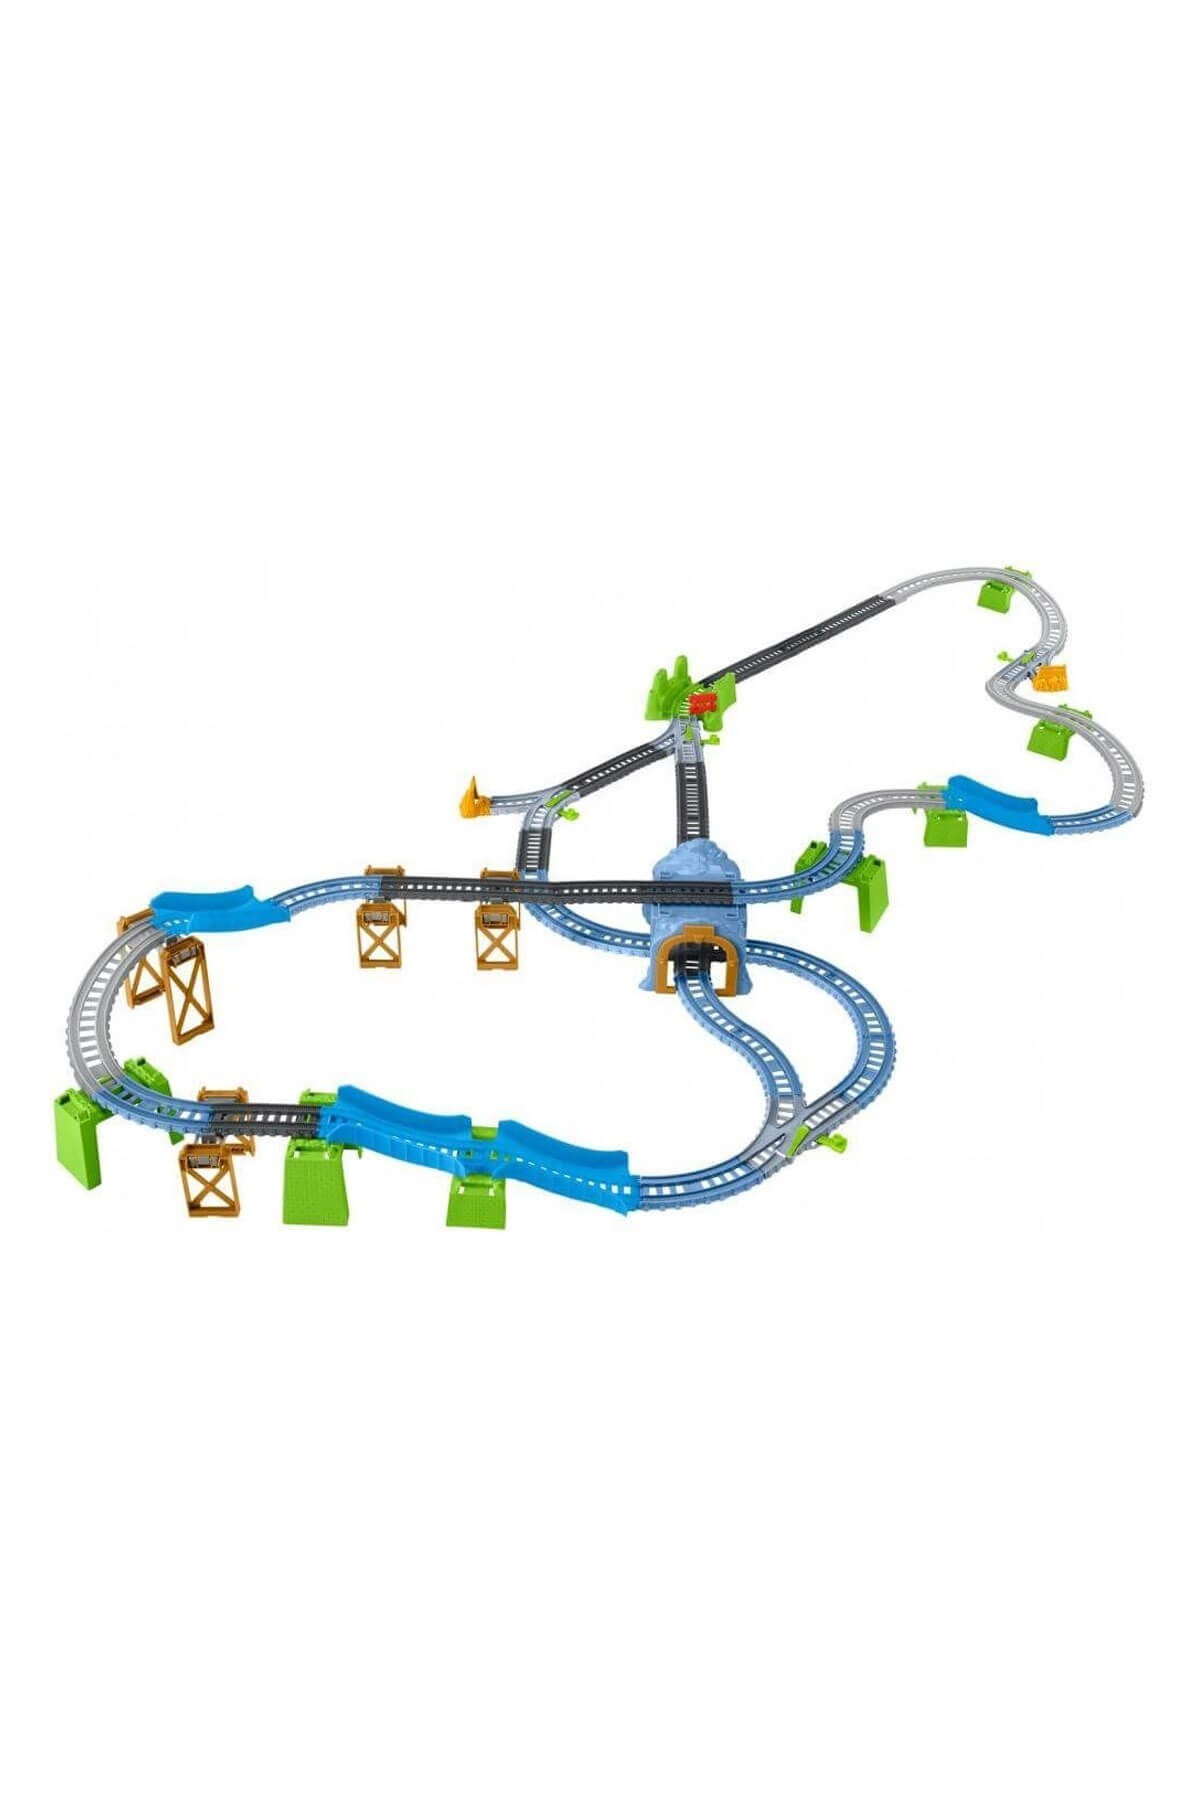 Thomas ve Arkadaşları Trackmaster Percy Büyük Macera Oyun Seti Motorlu Trenli GBN45